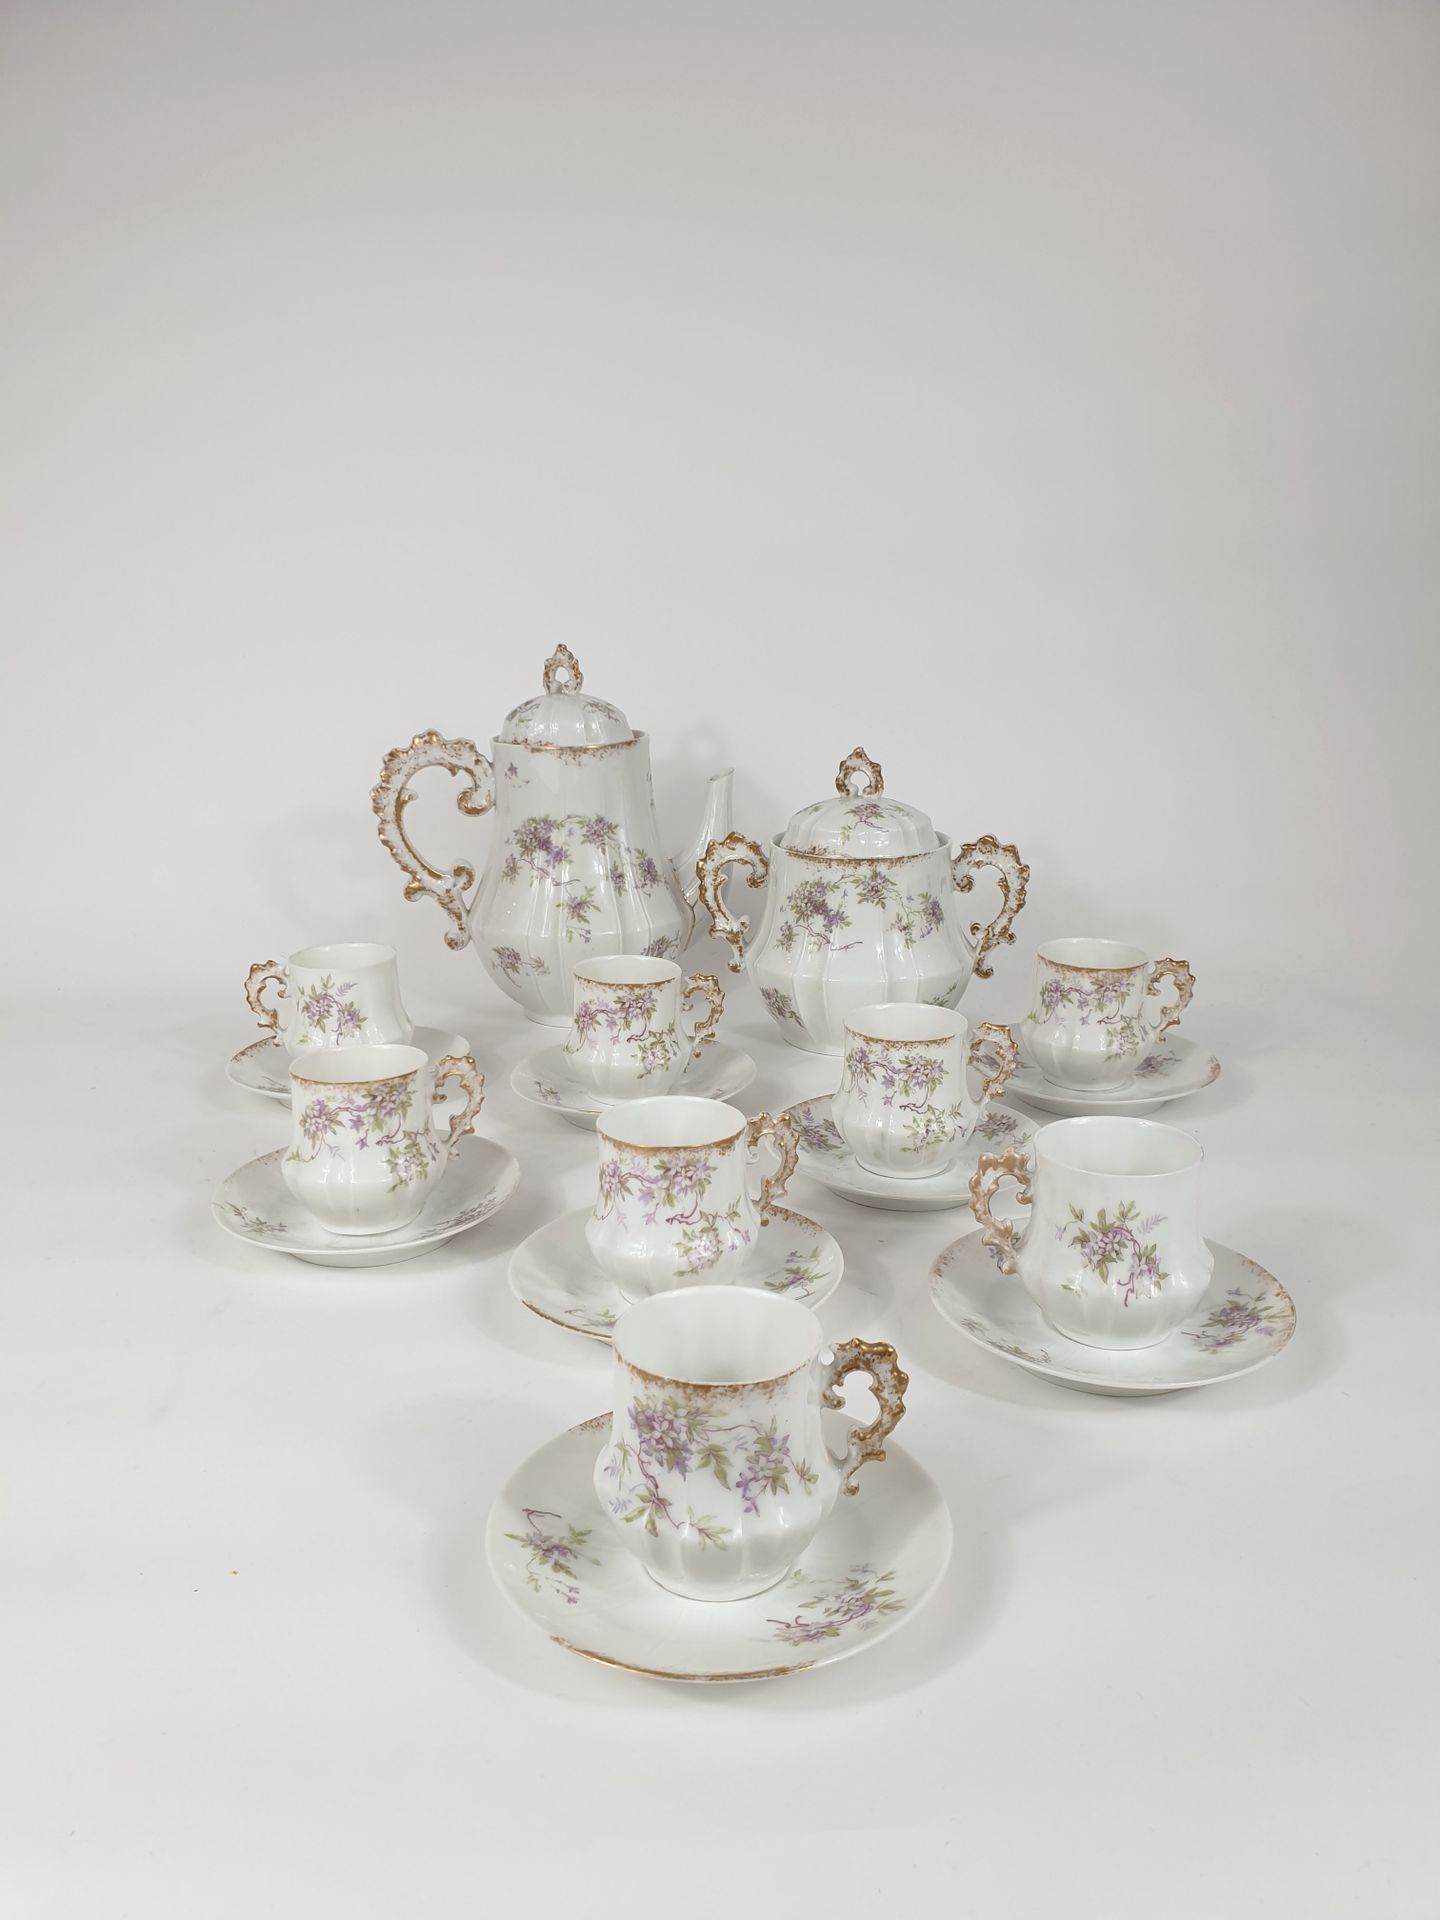 Null 瓷器咖啡套装包括八个杯子和碟子，一个咖啡壶和一个糖碗，上面装饰着枝状紫罗兰花束。
标记 "Aux lions de faïence, Paris, r&hellip;